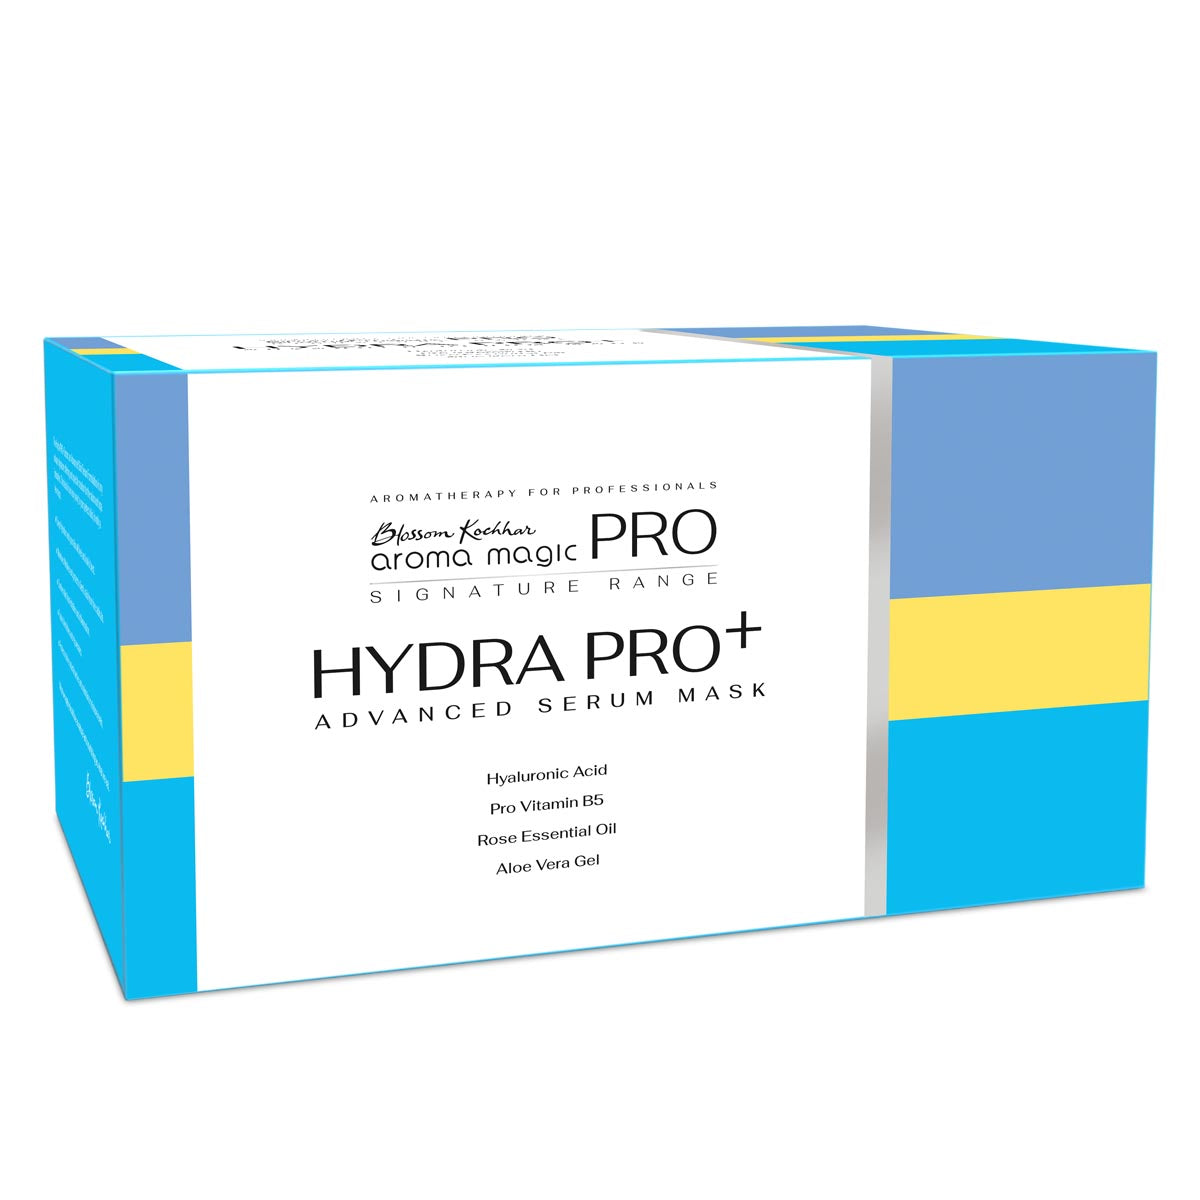 Hydra Pro Advanced Serum Mask Kit